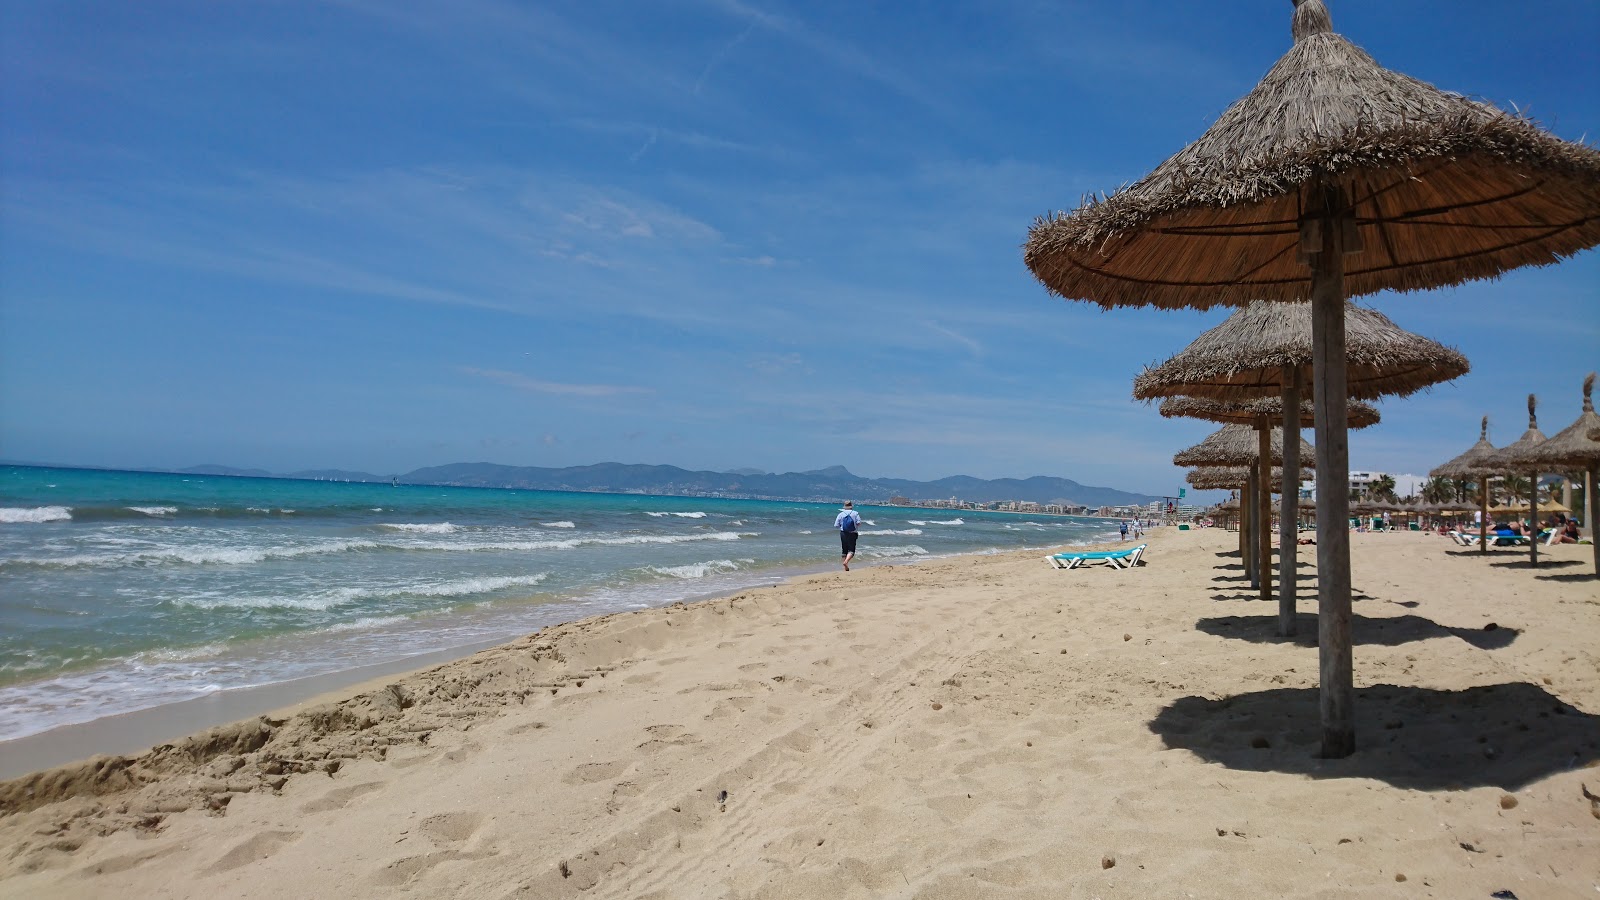 Fotografie cu Platja de s'Arenal (Palma) - locul popular printre cunoscătorii de relaxare